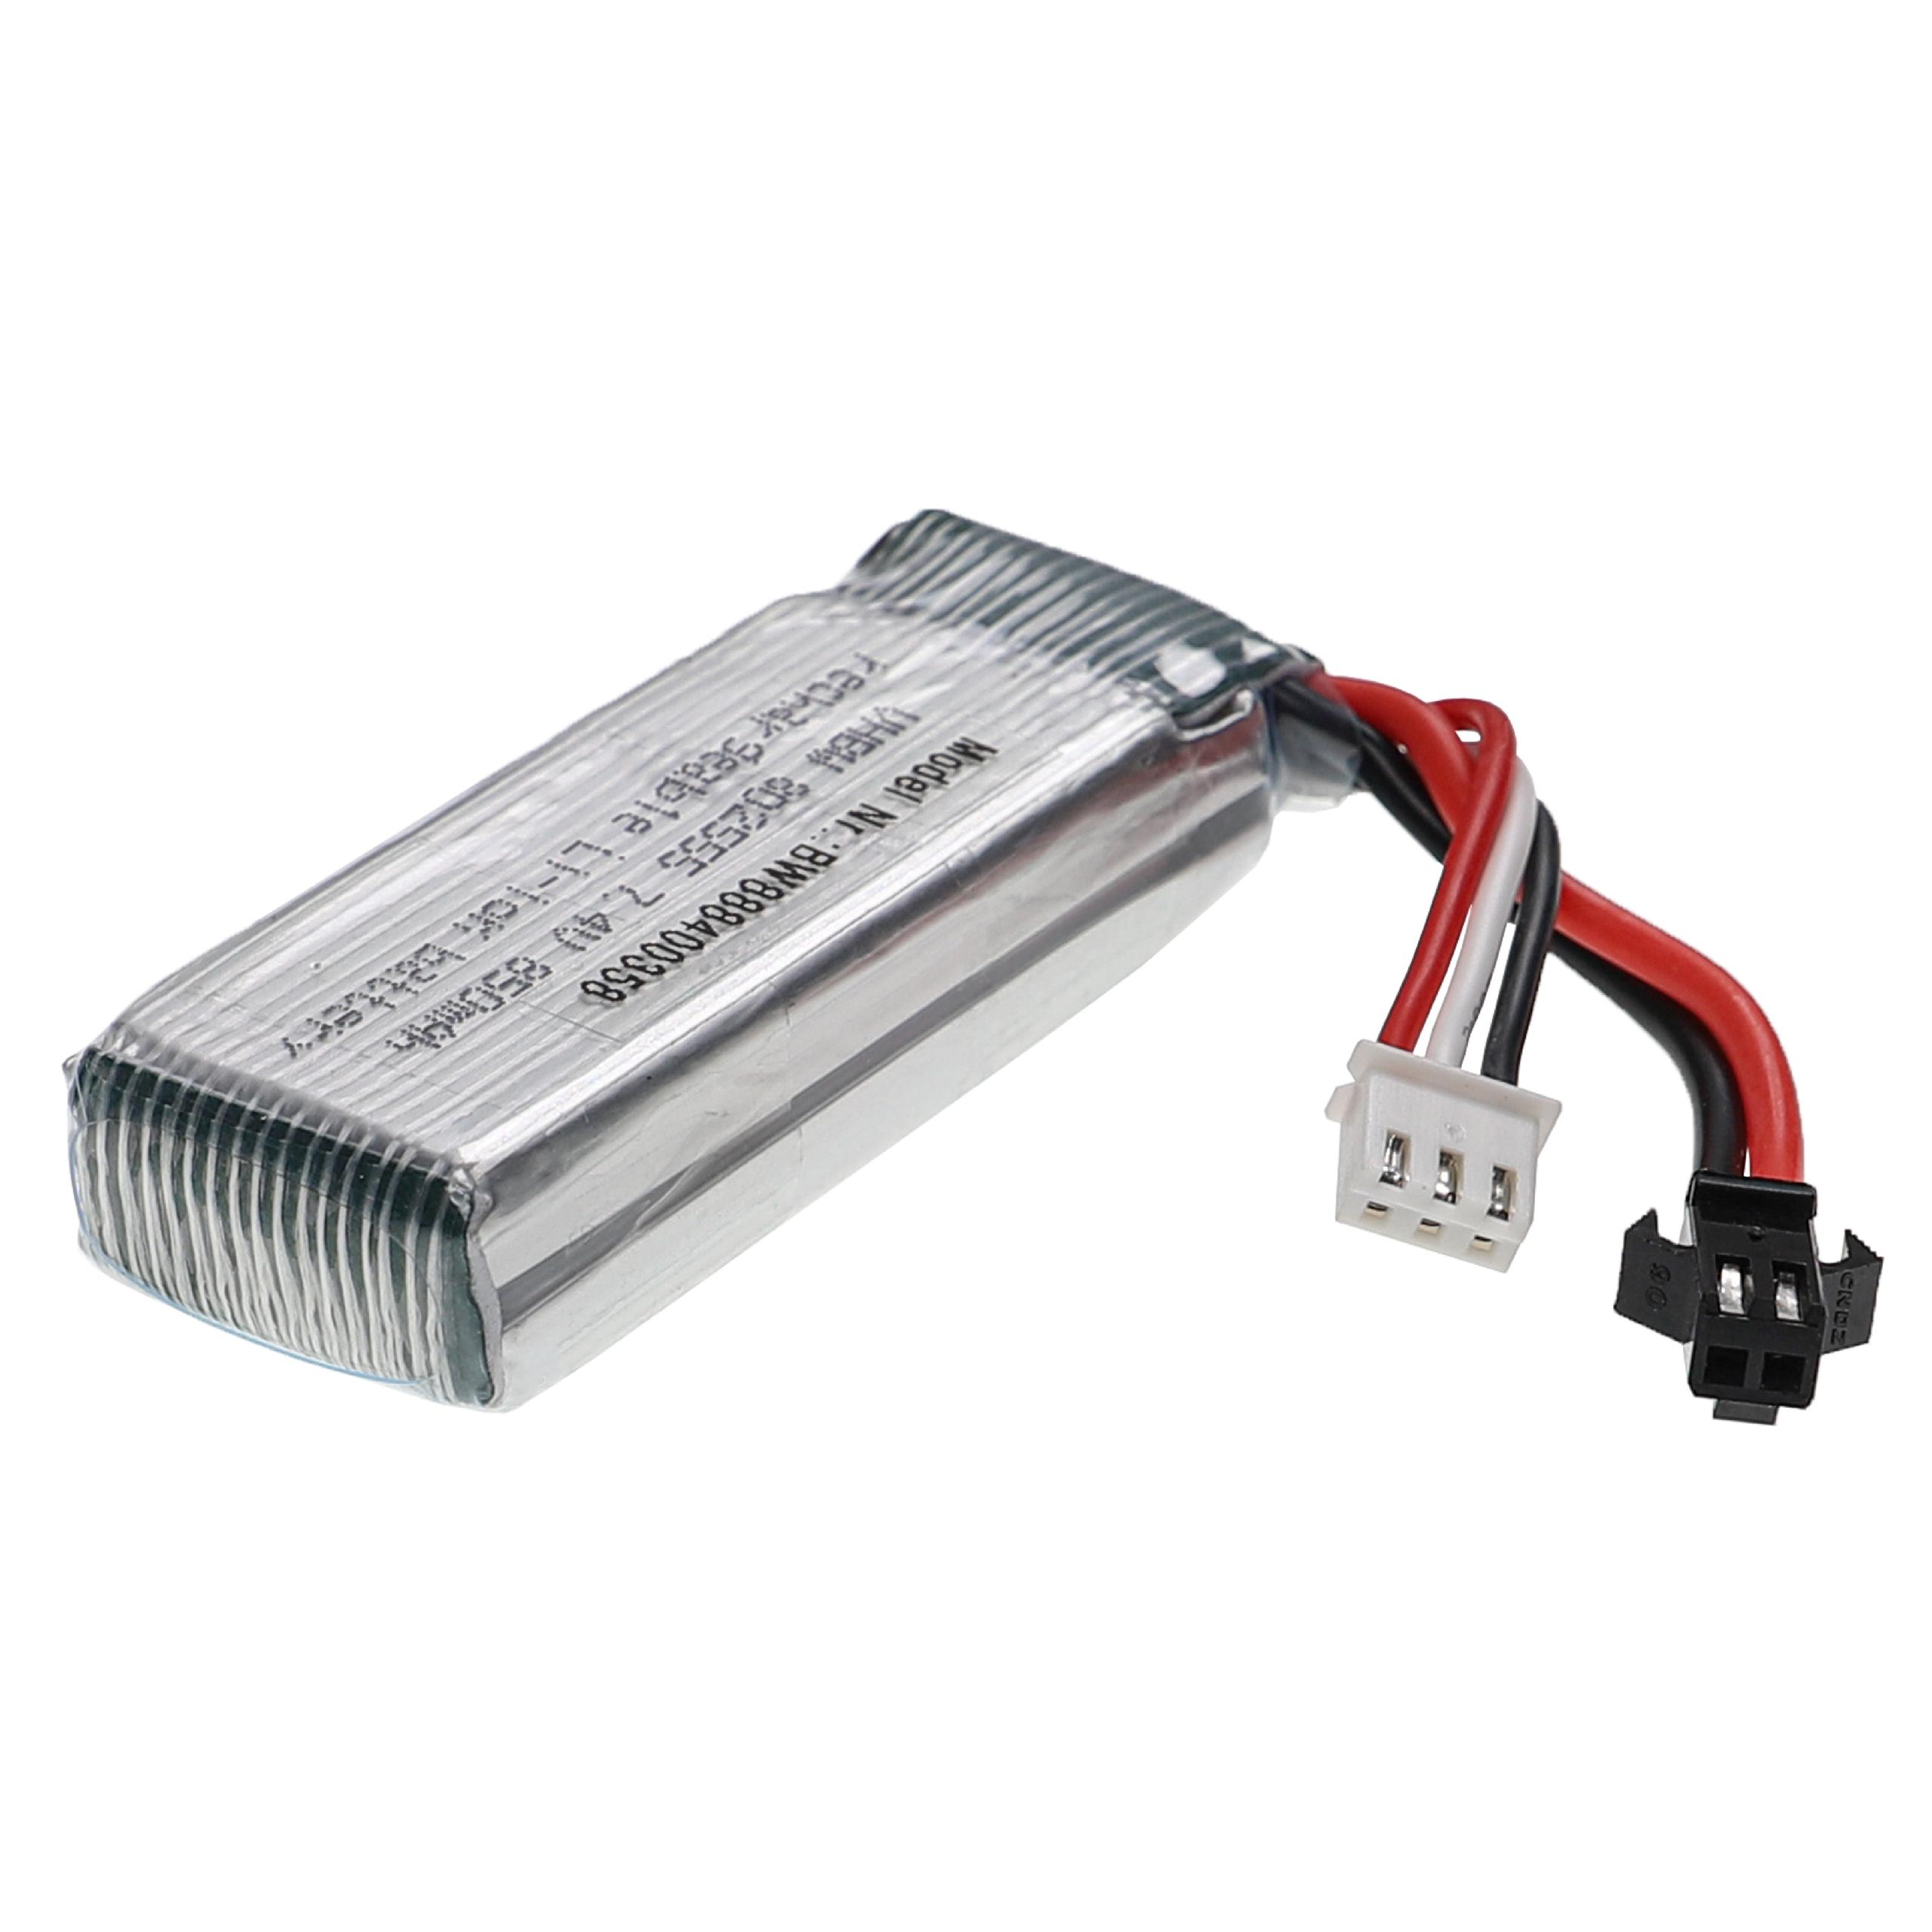 Batterie pour modèle radio-télécommandé - 850mAh 7,4V Li-polymère, SM-2P